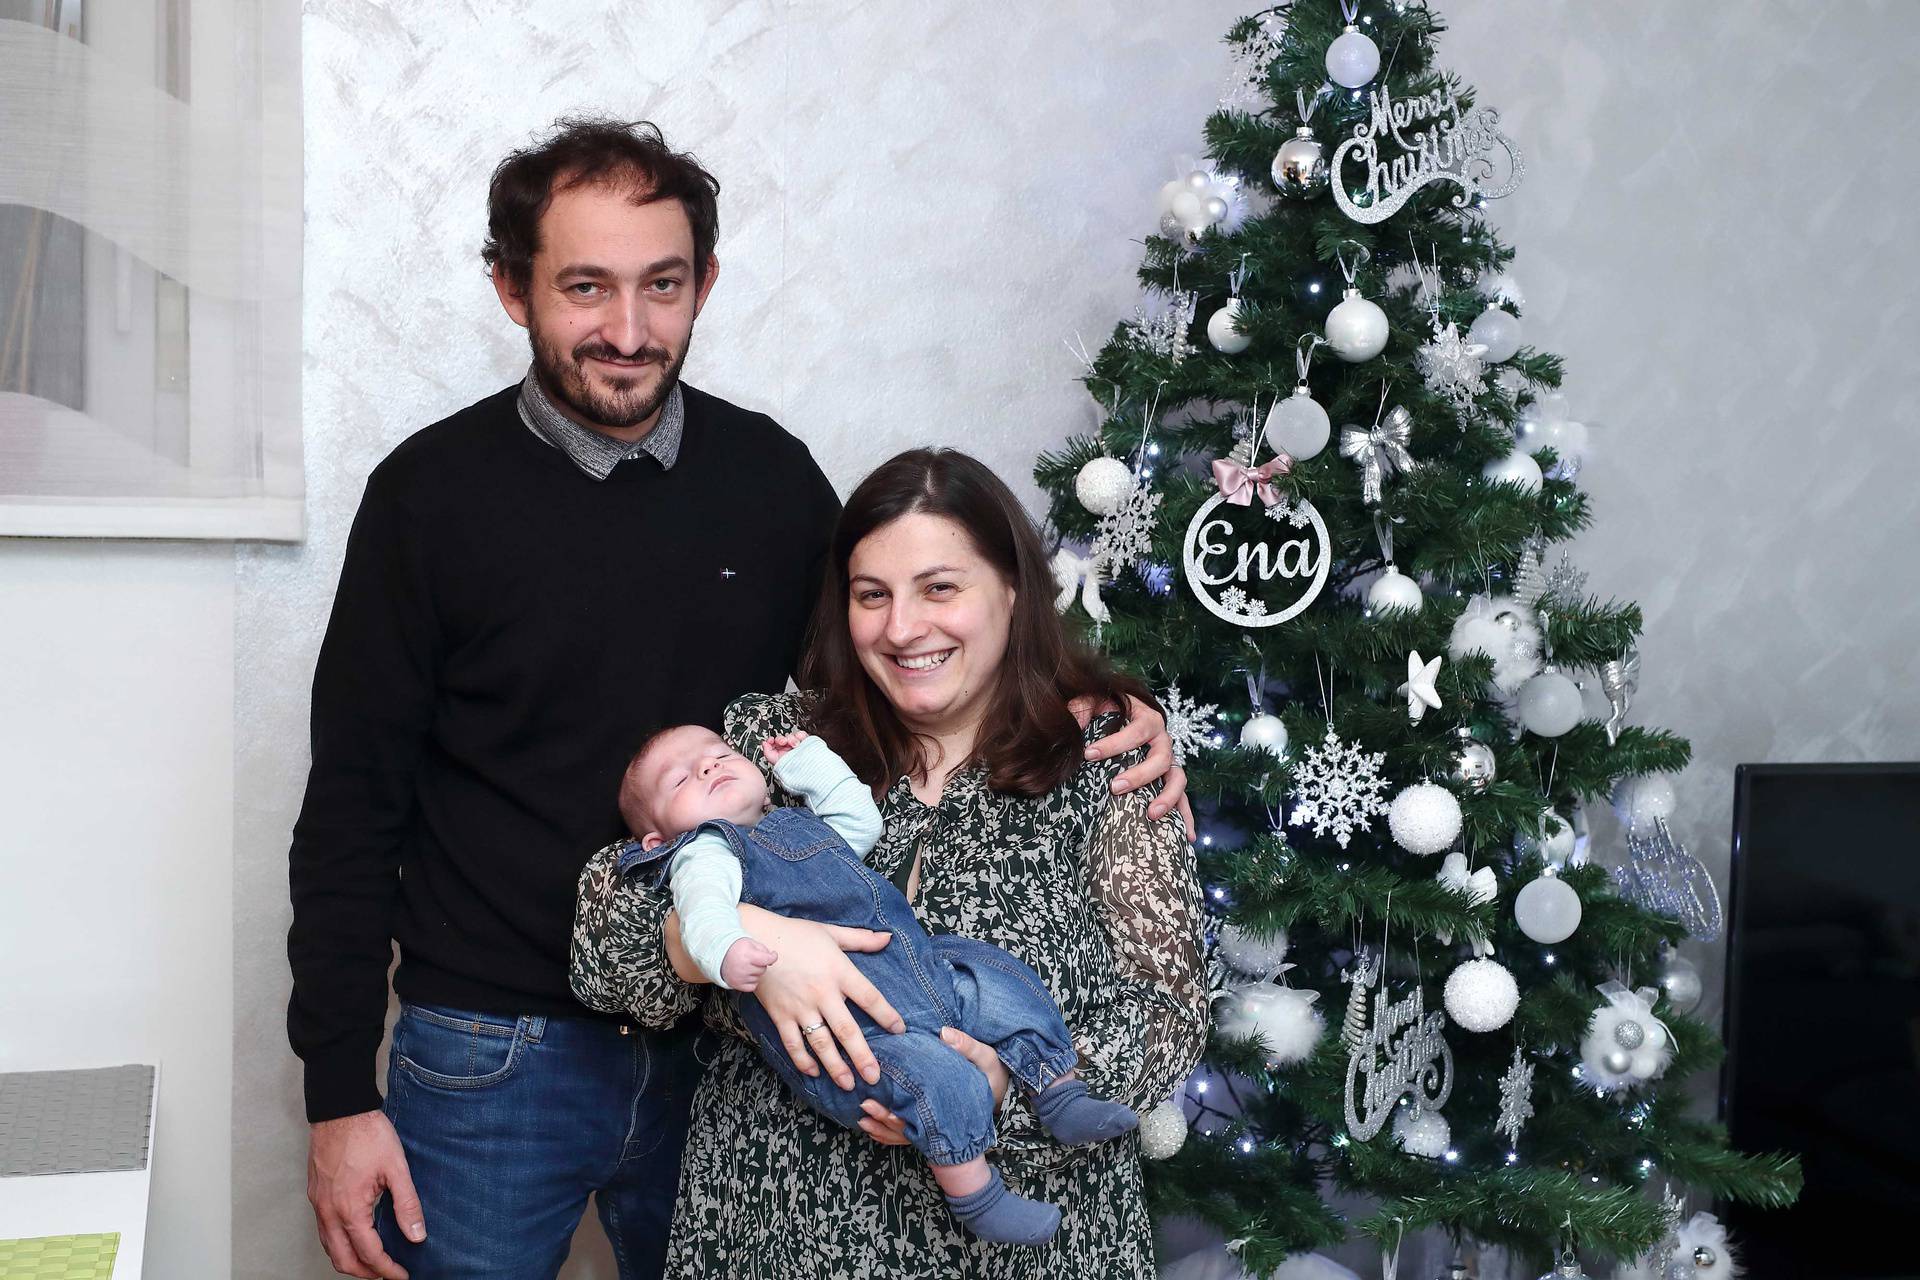 Mali Jona je konačno doma za Božić s mamom i tatom: 'Ovo je za nas poput najljepše bajke'